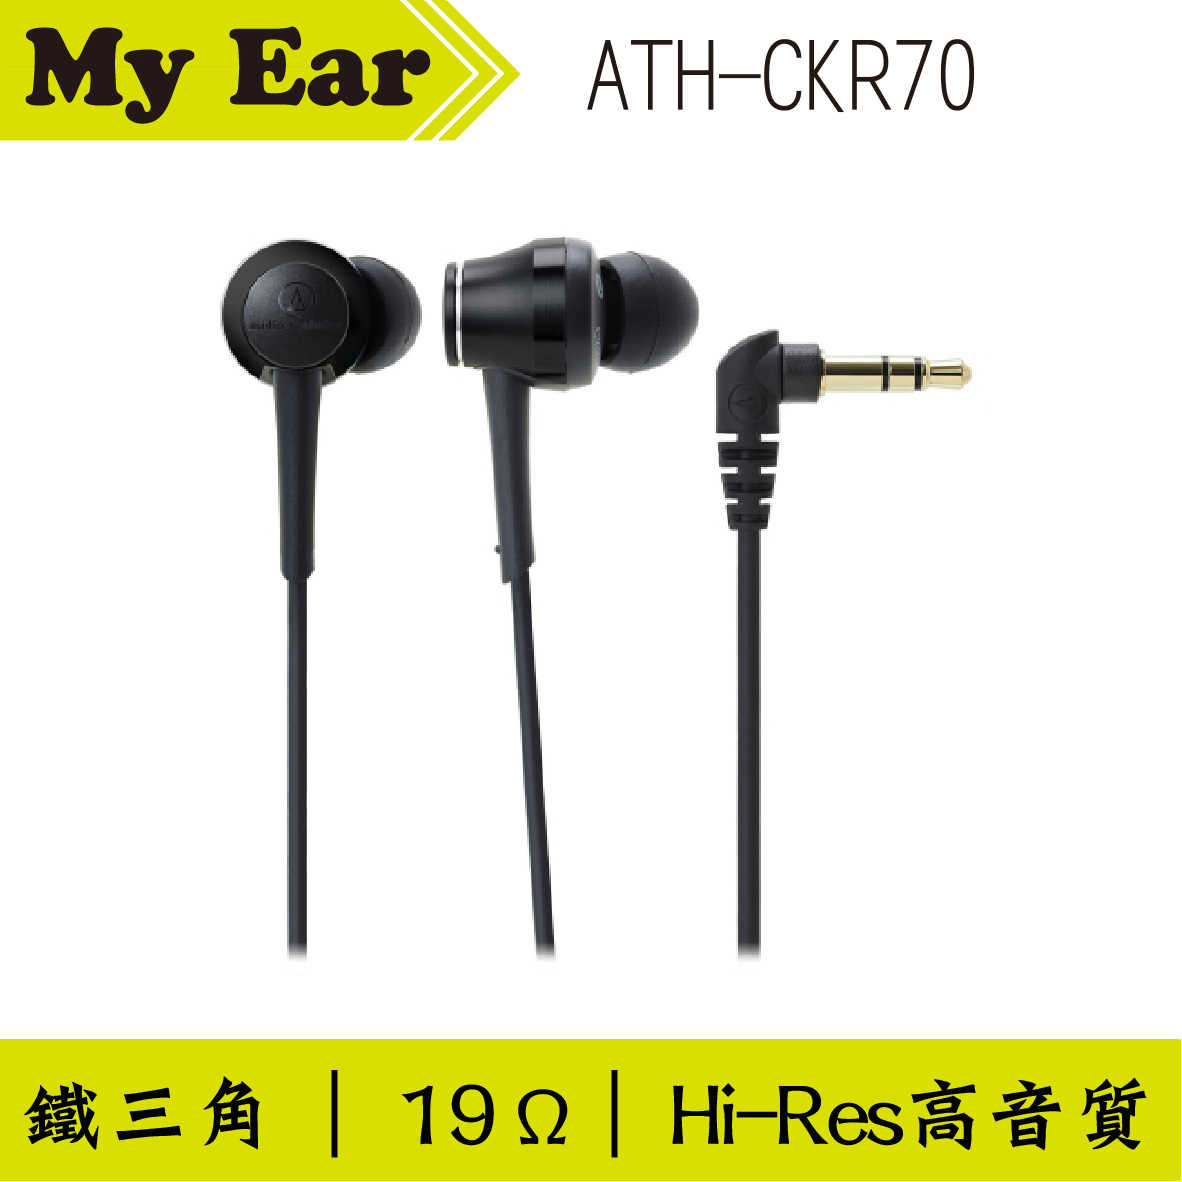 鐵三角 ATH-CKR70 耳道式耳機 黑色｜My Ear 耳機專門店